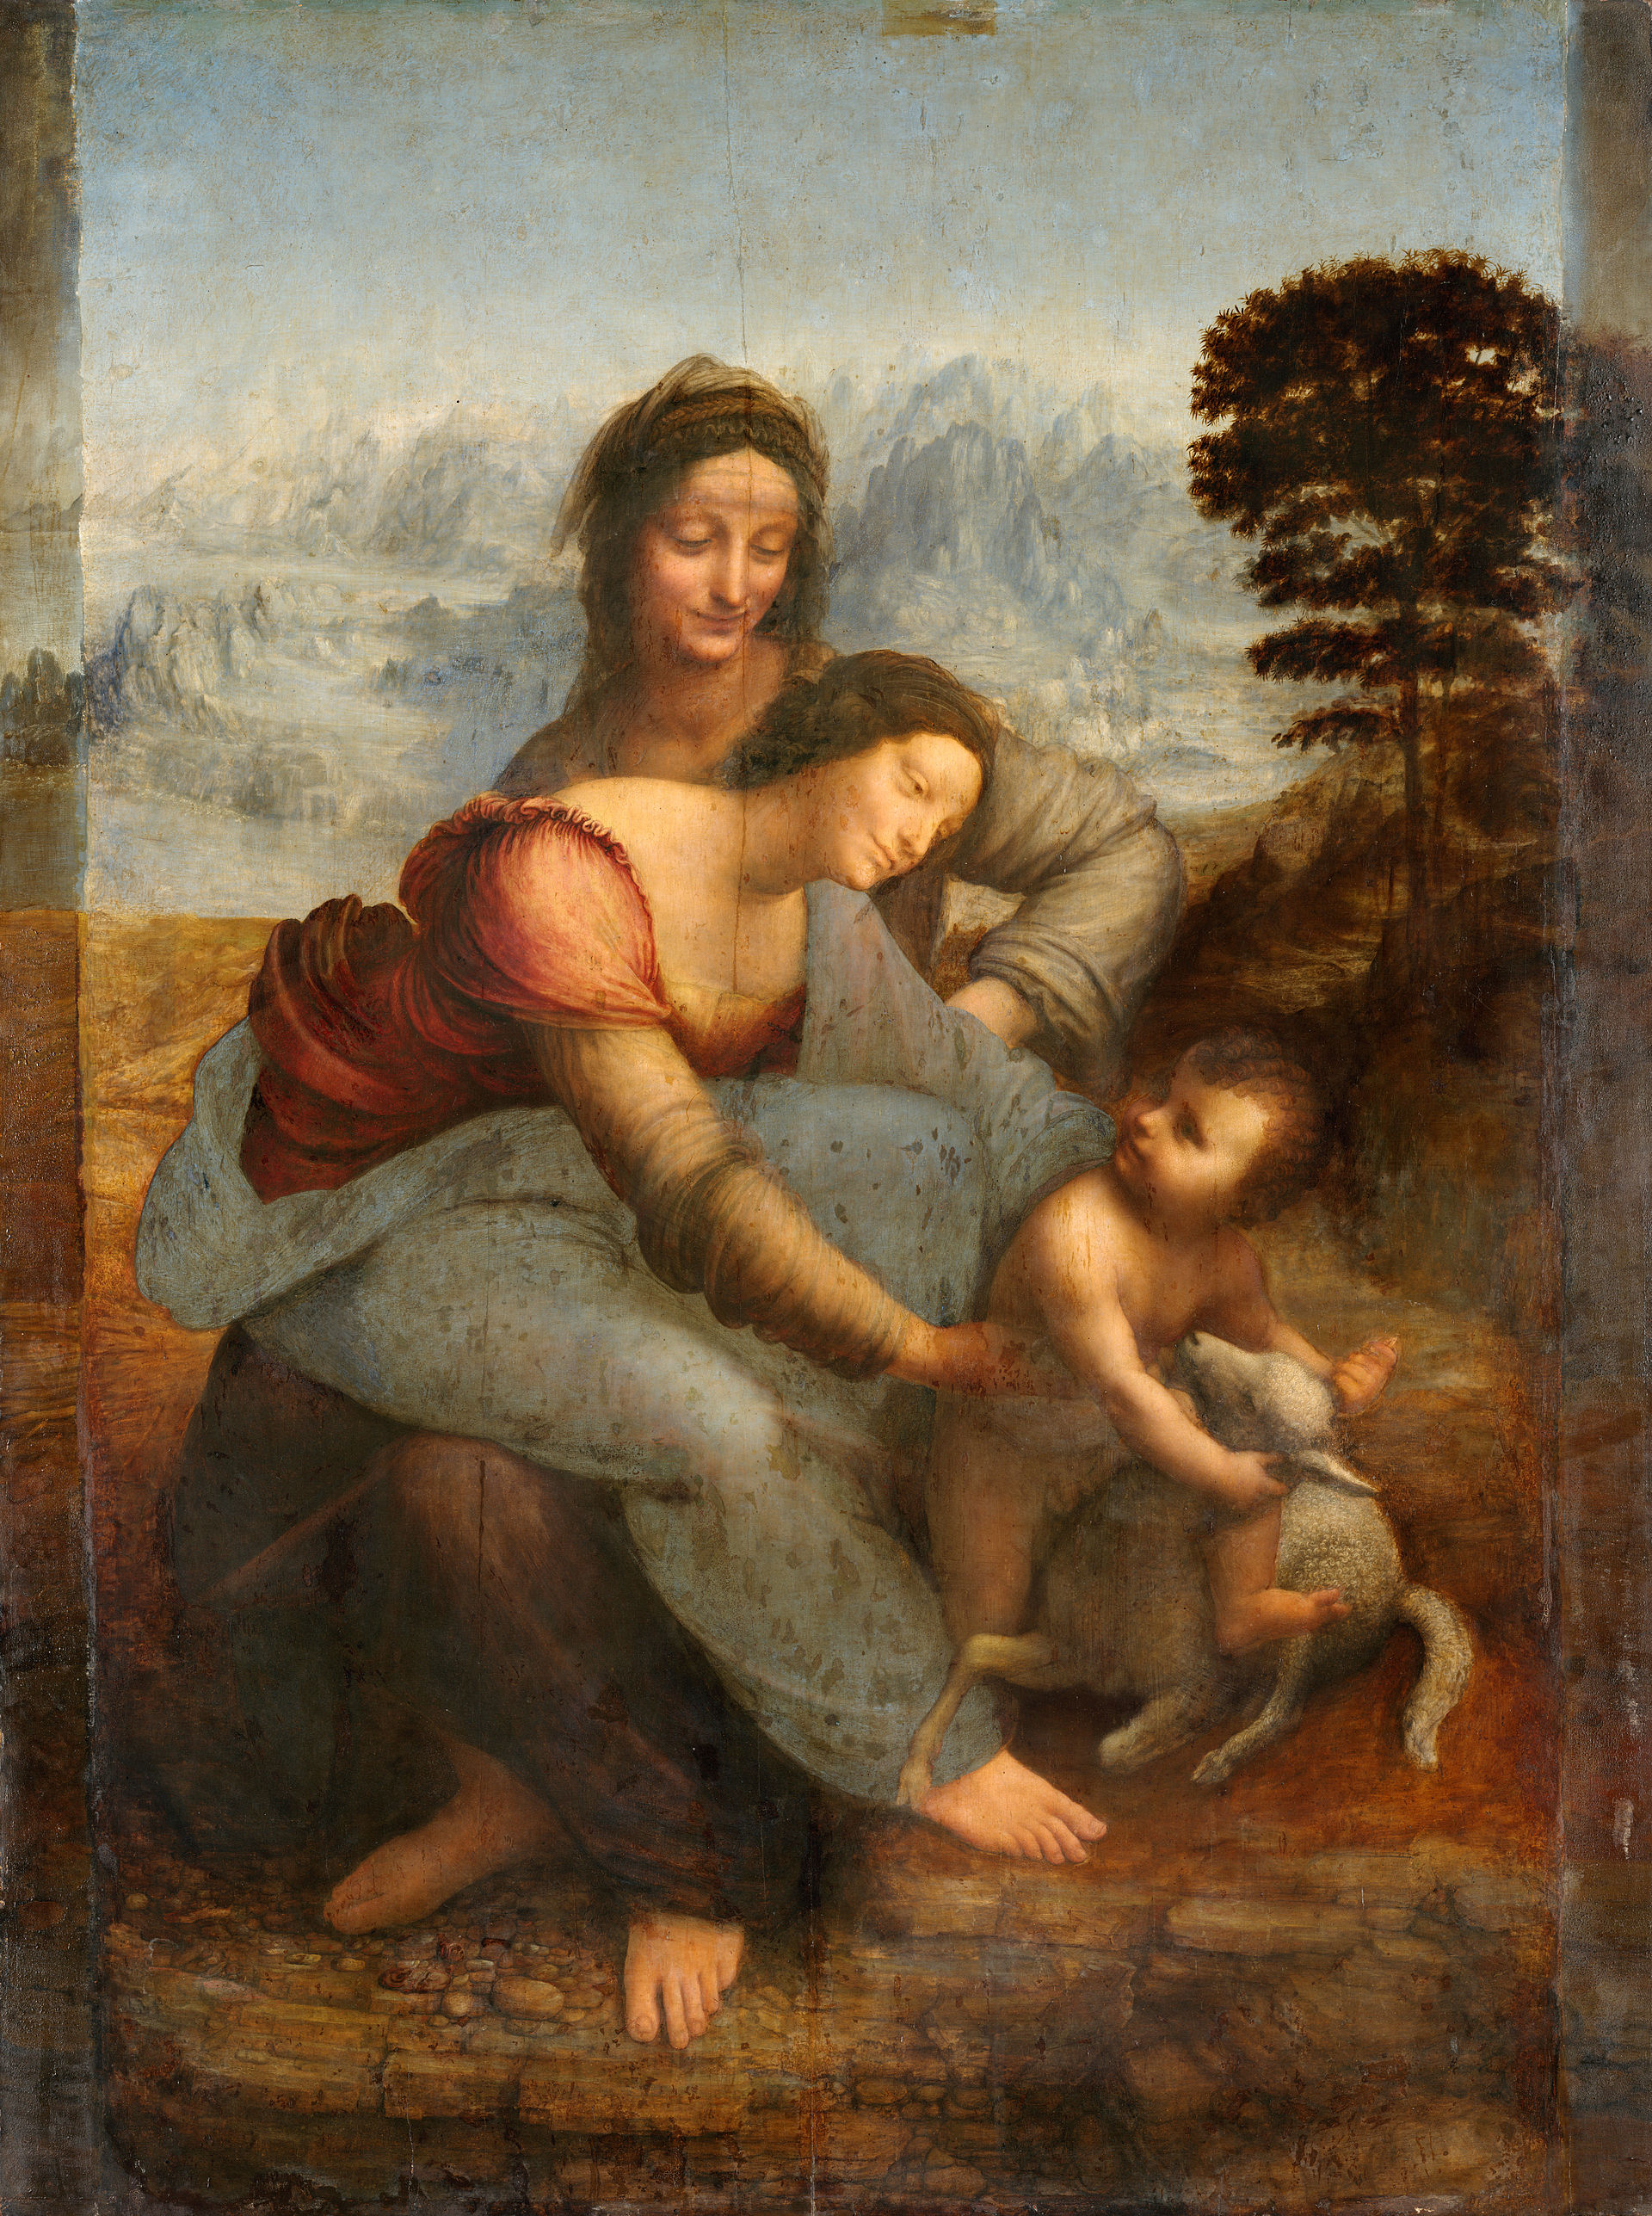 العذراء والطفل مع سانت آن - The Virgin and Child with St. Anne - مقهى جرير الثقافي